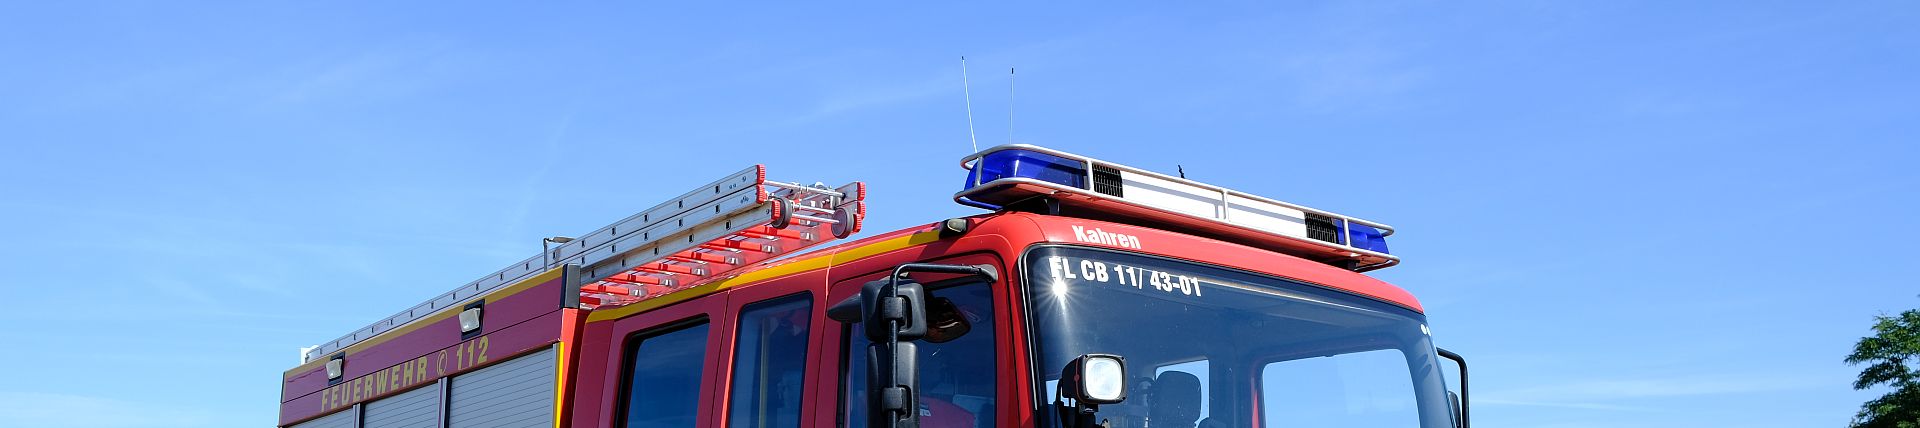 Freiwillige Feuerwehr Stadt Cottbus, Ortsfeuerwehr Kahren